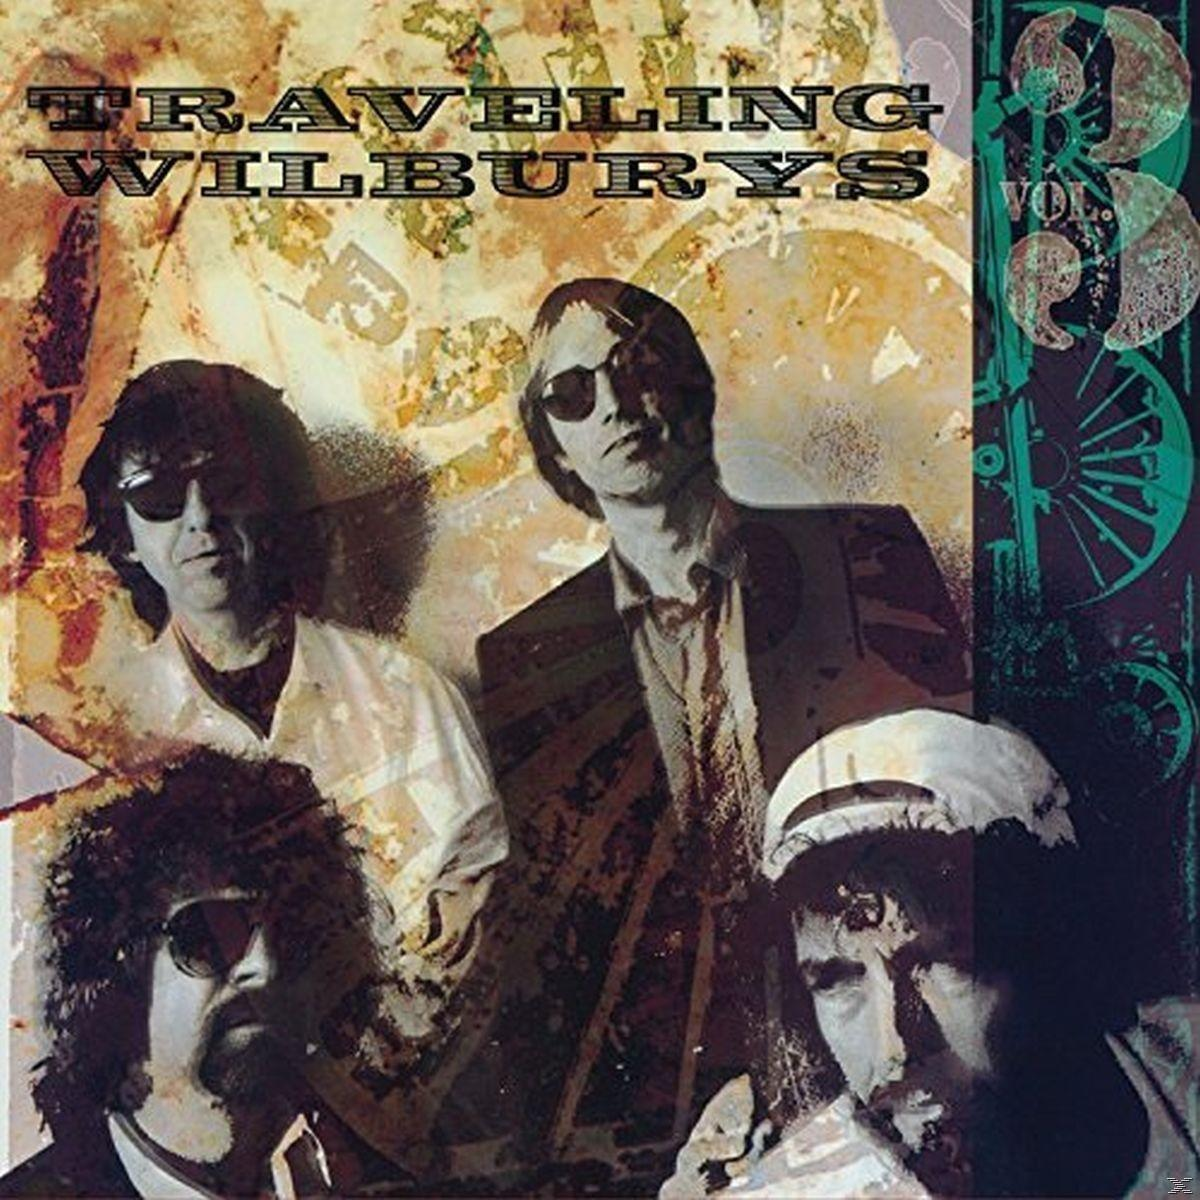 VARIOUS, Traveling Wilburys - The - (CD) Wilburys,Vol.3 Traveling